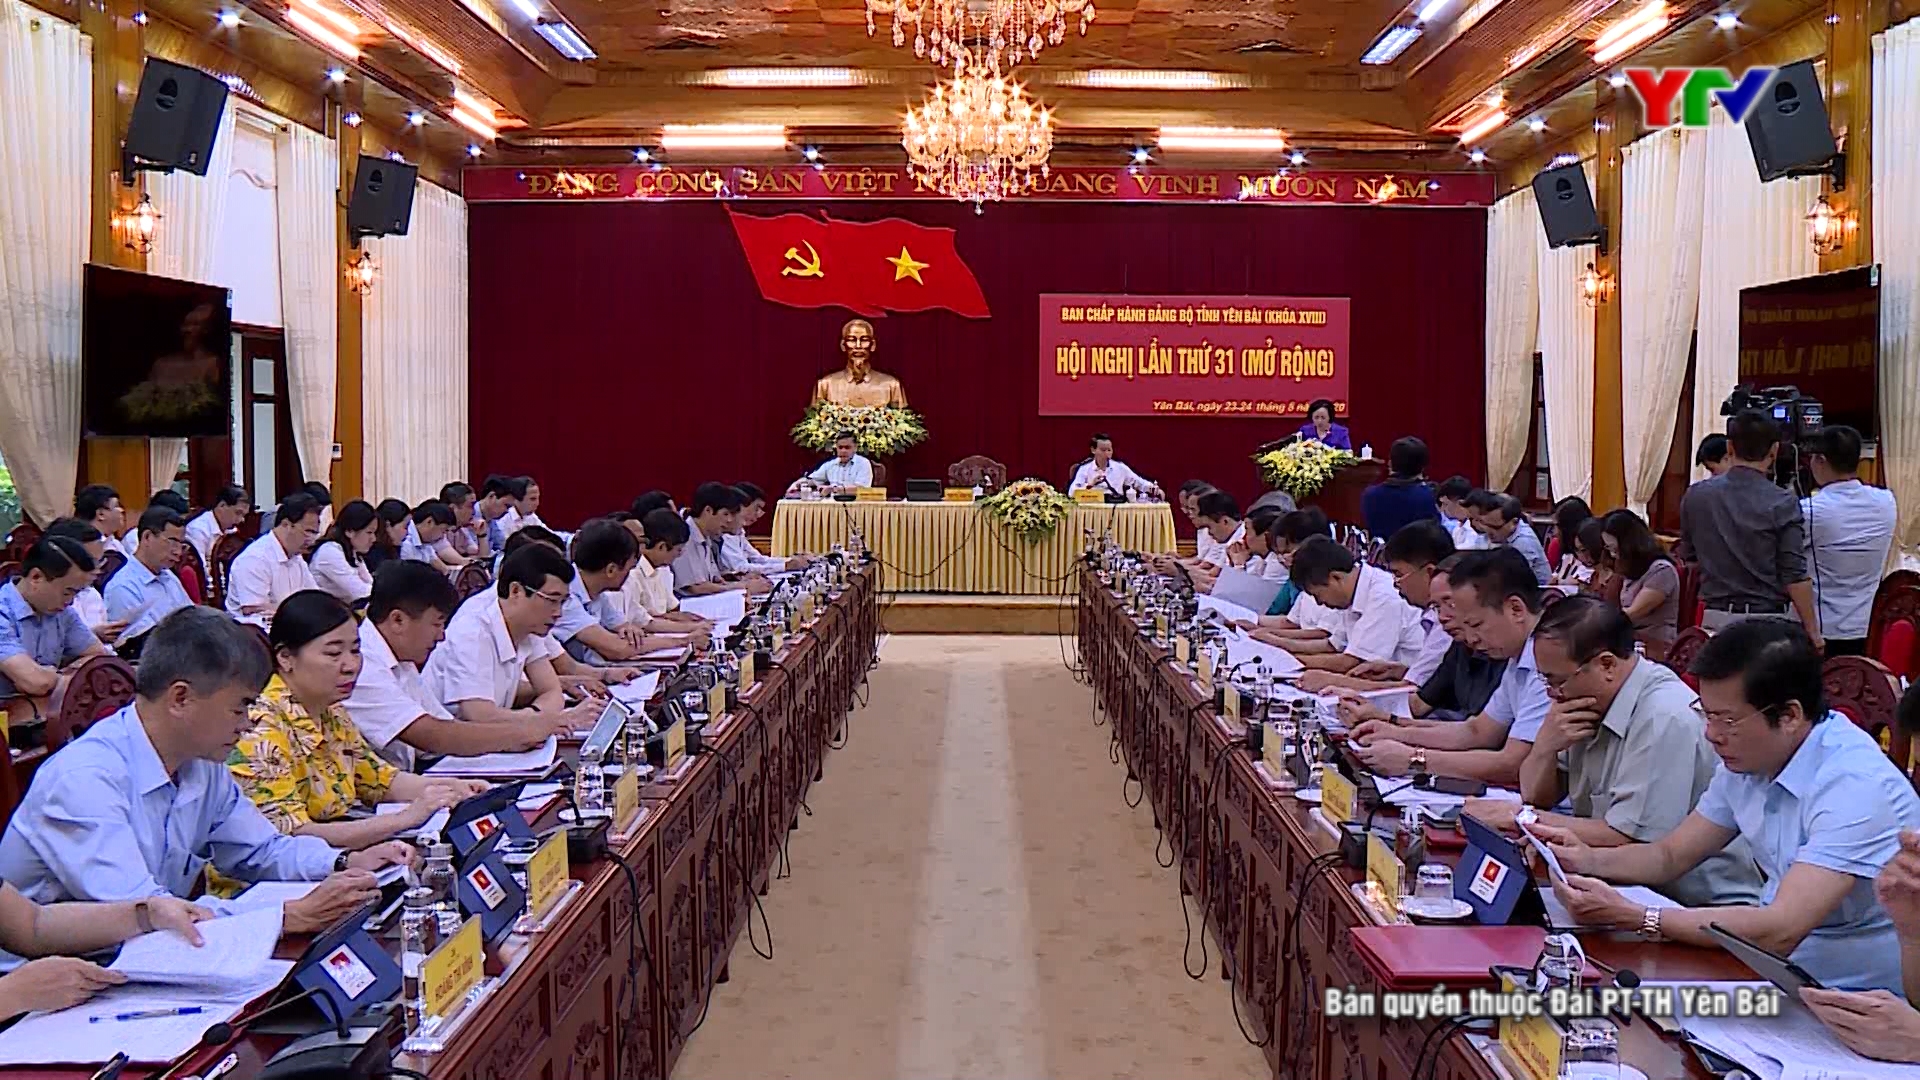 Phát biểu Khai mạc của đồng chí Bí thư Tỉnh ủy Phạm Thị Thanh Trà tại Hội nghị BCH Đảng bộ tỉnh Yên Bái lần thứ 31 ( mở rộng)